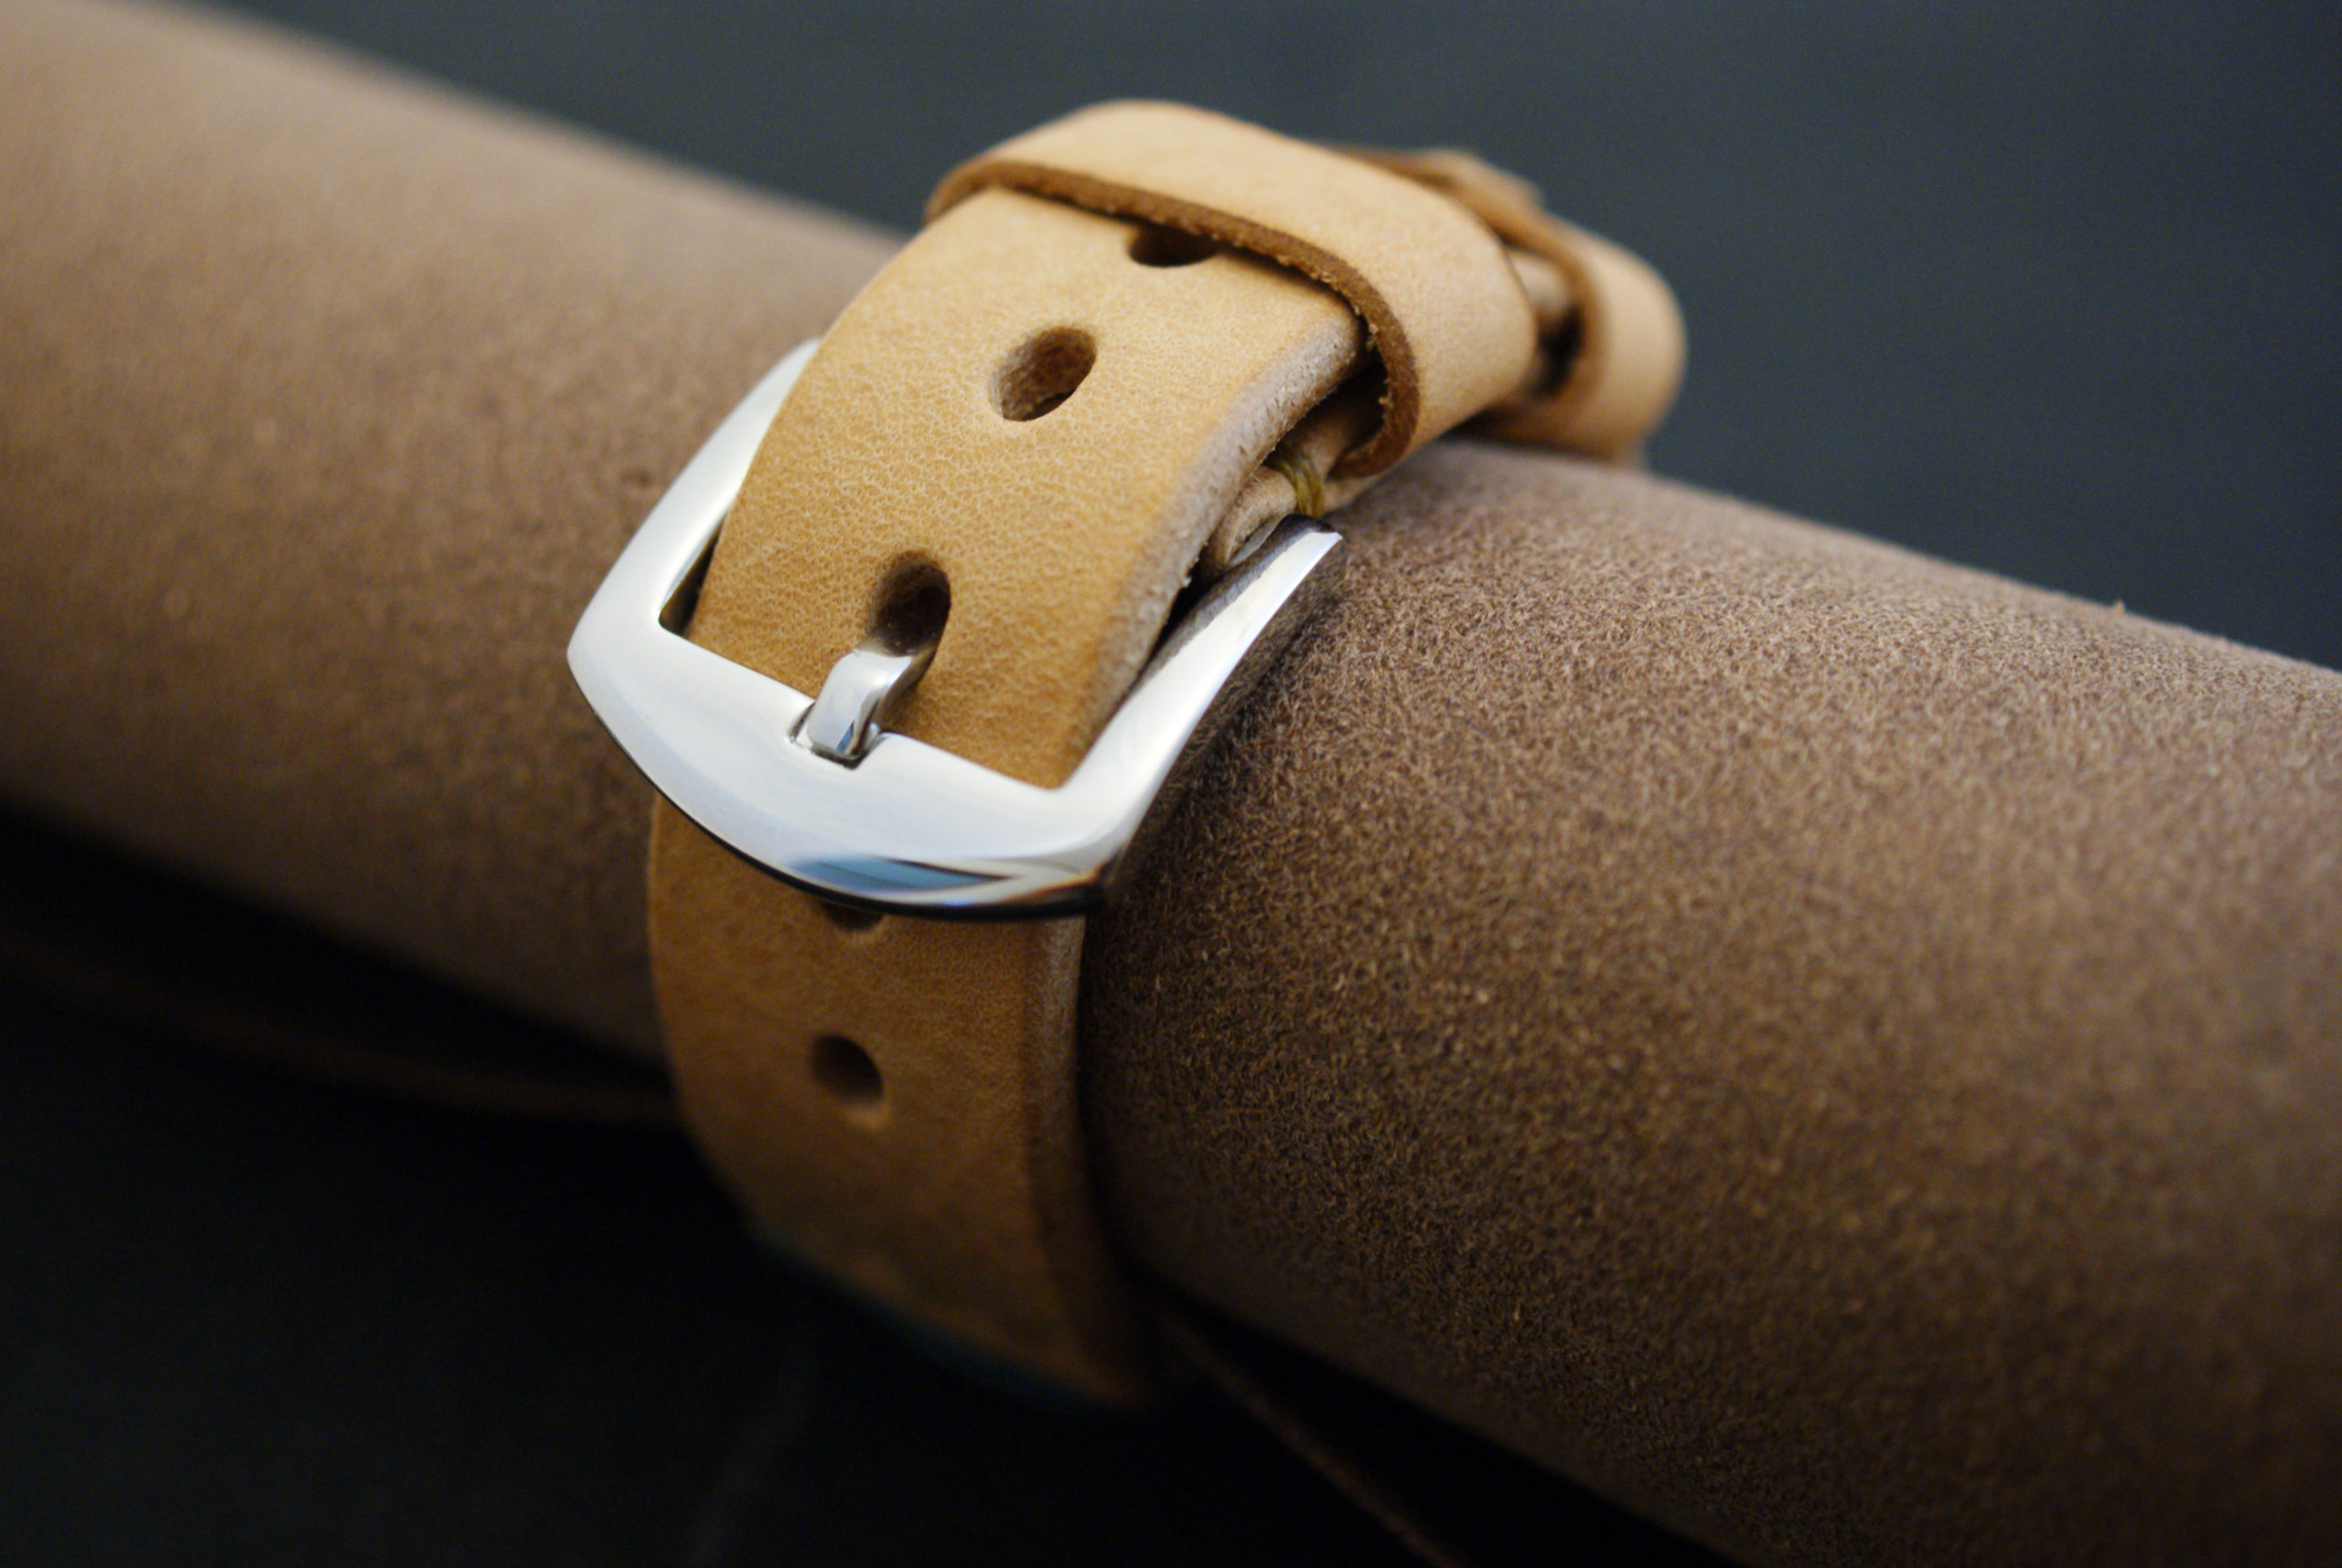 アップルウォッチバンド 革製 Apple Watch Bands in Leather ナチュラル Bottega Glicine 革製品専門店